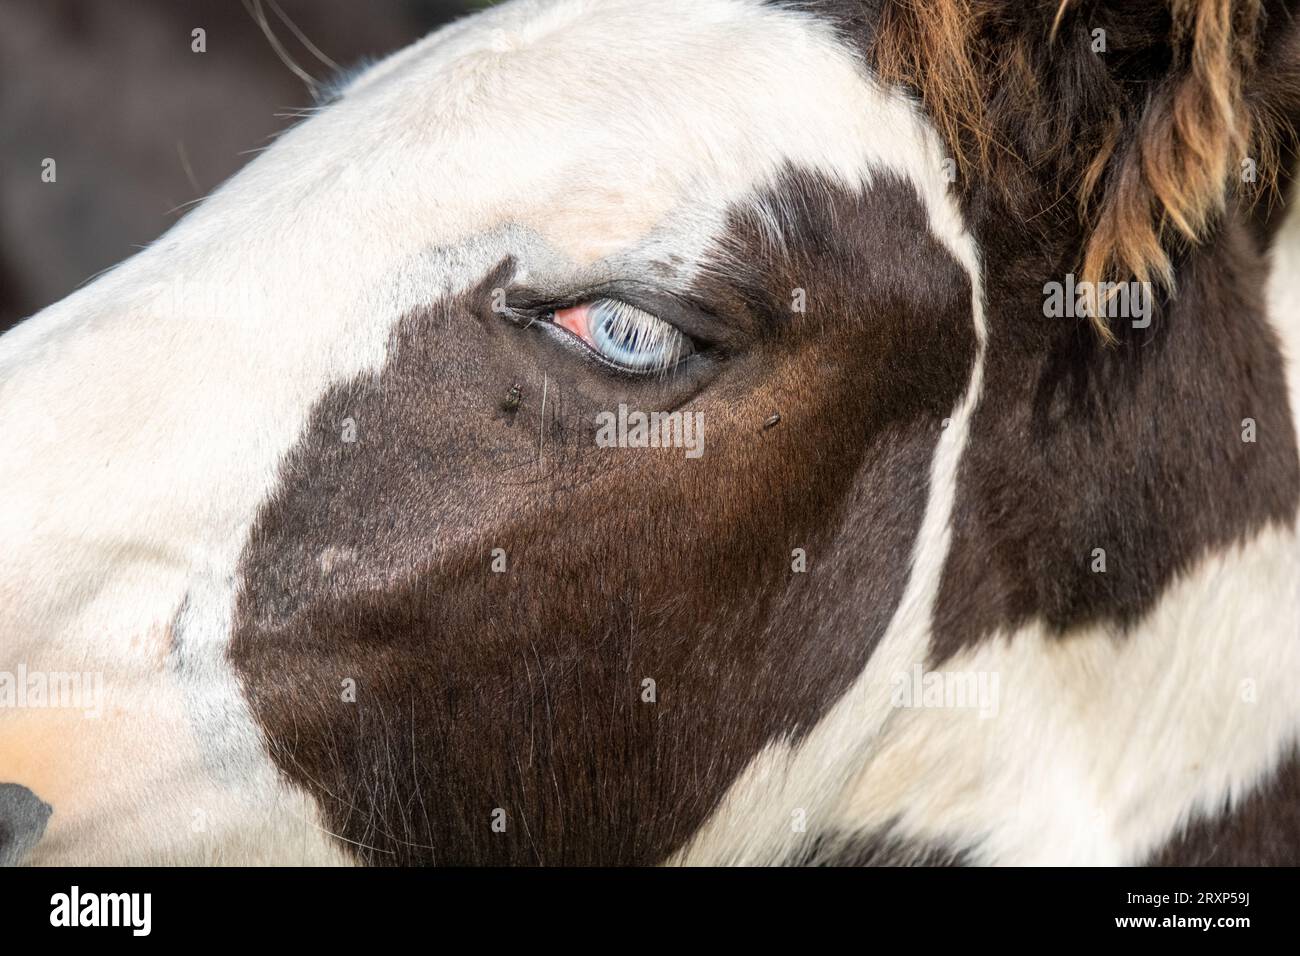 Zig dagli occhi blu. Ritratto laterale di un cavallo. Gli occhi blu sono rari per un cavallo. Un giovane cavallo in un mini zoo privato, dagli occhi azzurri. Foto Stock